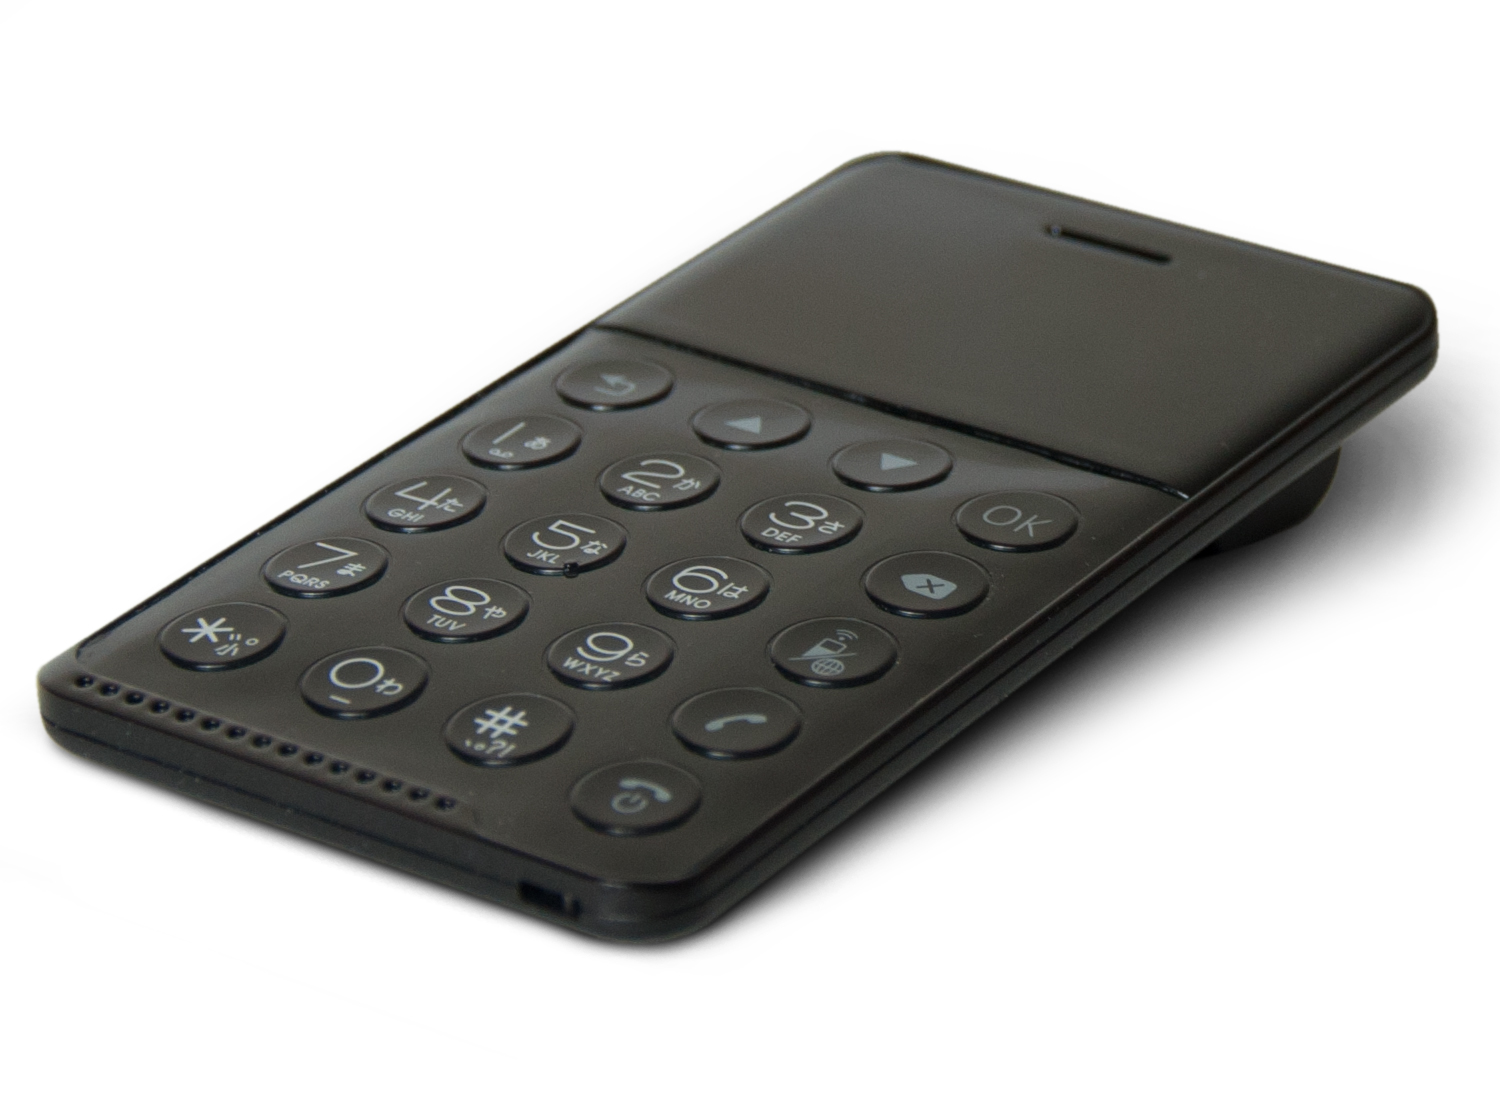 デジタルガジェット備忘録 フューチャーモデル カードサイズの携帯電話